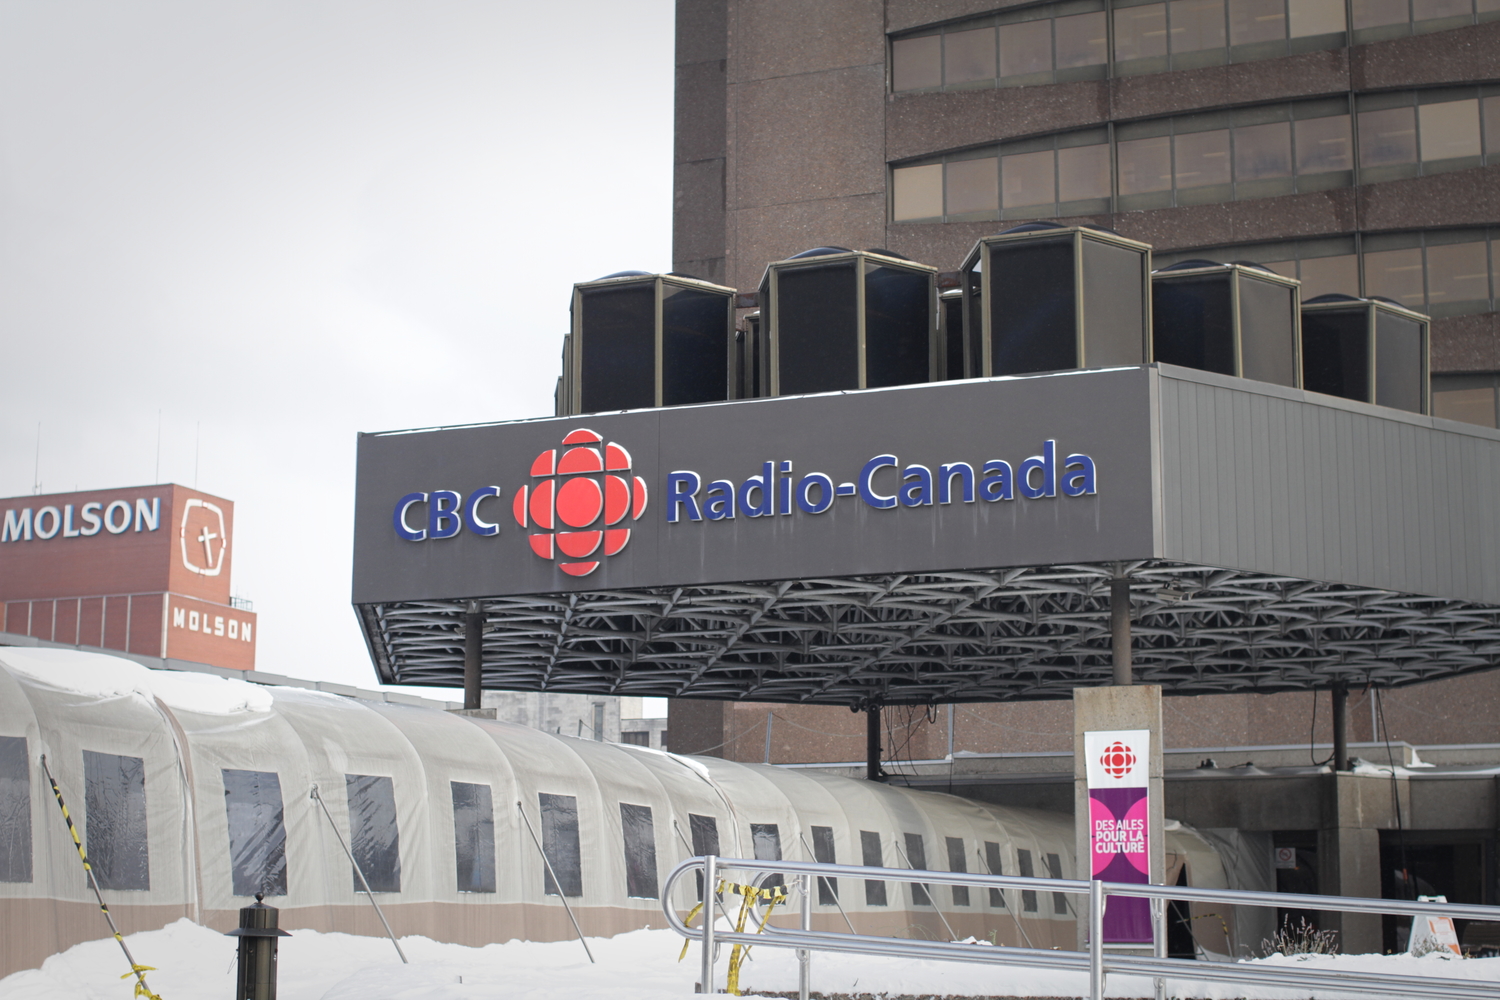 L’entrée du bâtiment qui héberge Radio Canada et CBC (radio et TV anglophone).